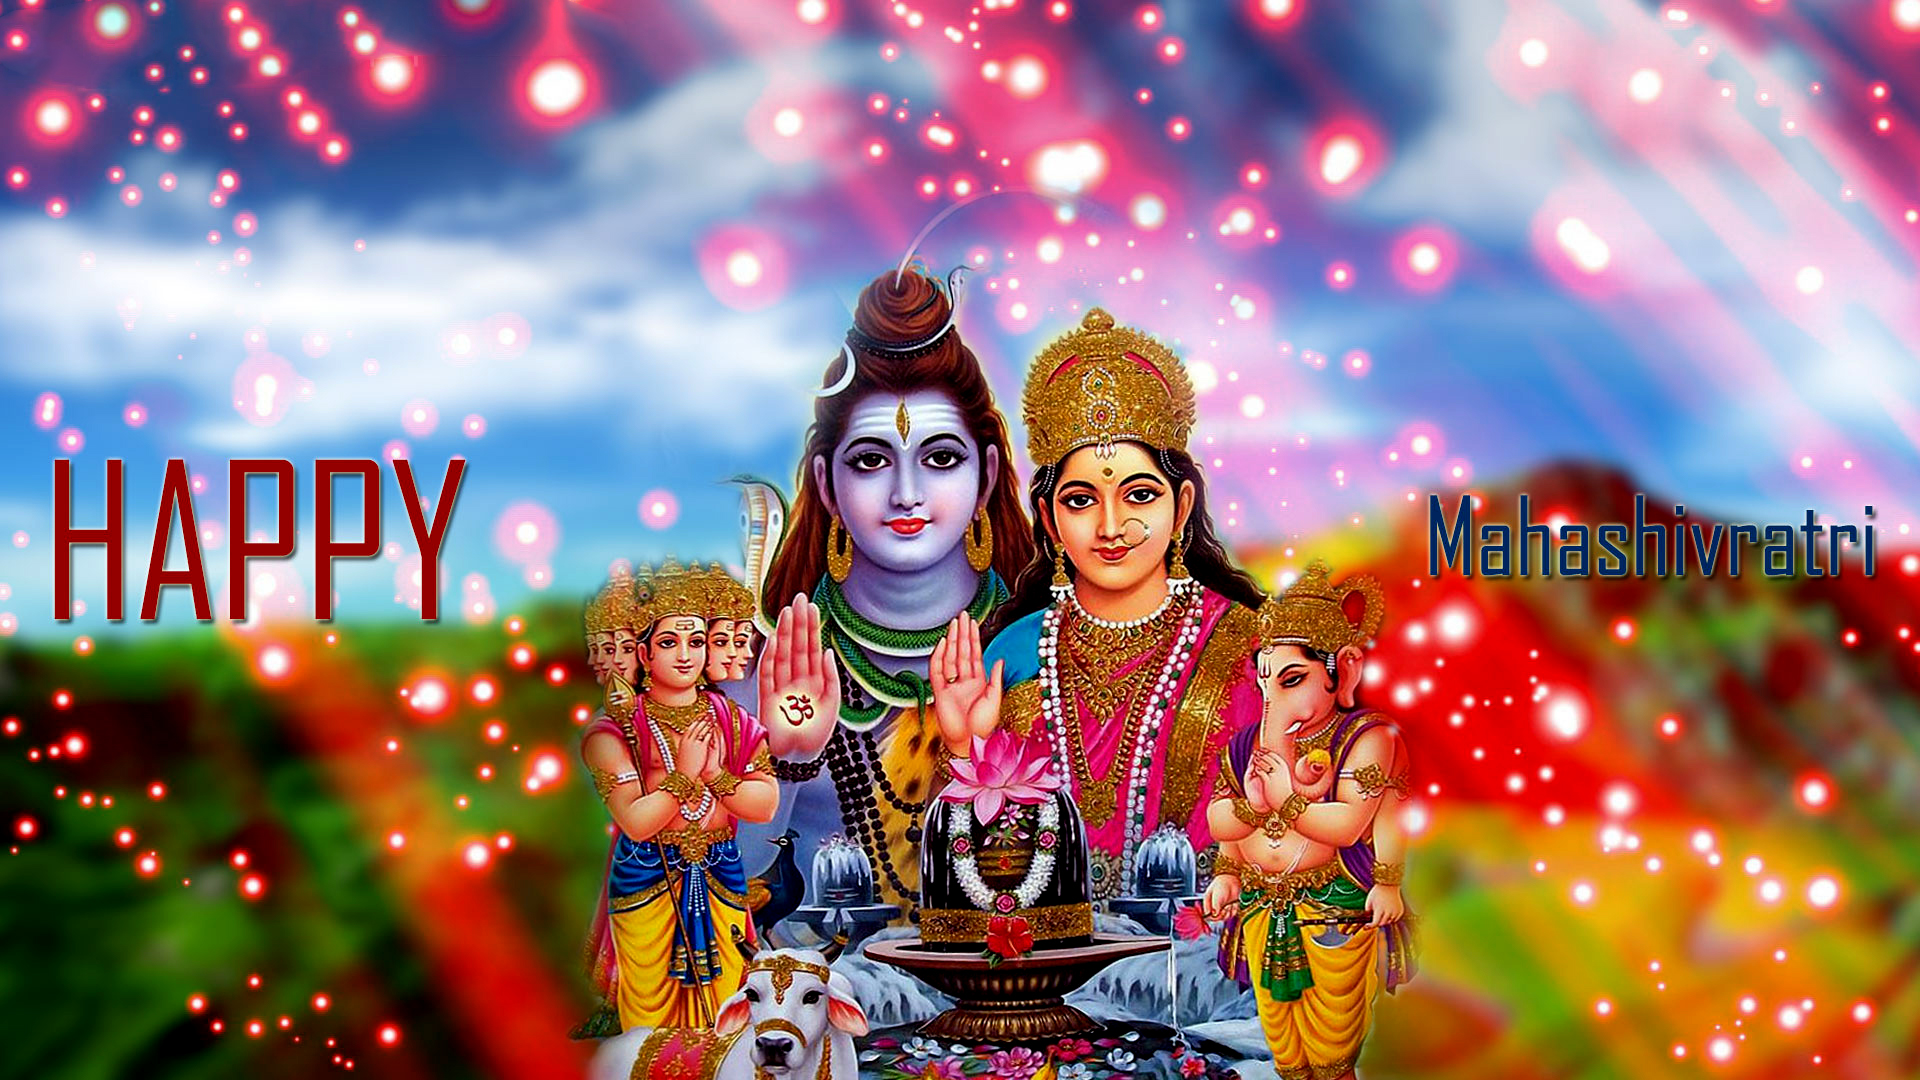 Maha Shivratri Shiv Parvati Family Images - God HD Wallpapers